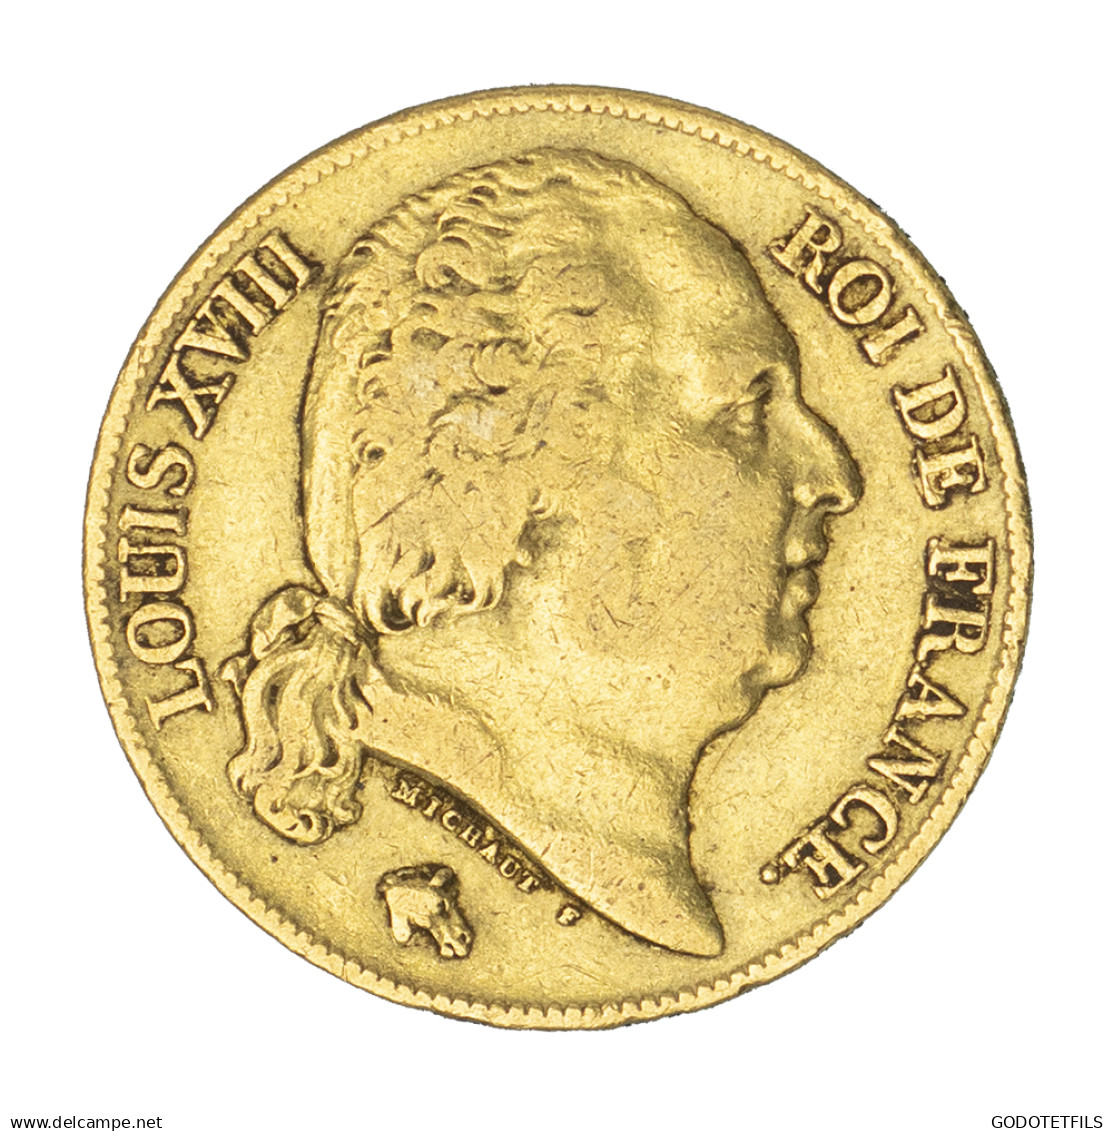 Louis XVIII-20 Francs 1819 Paris - 20 Francs (gold)